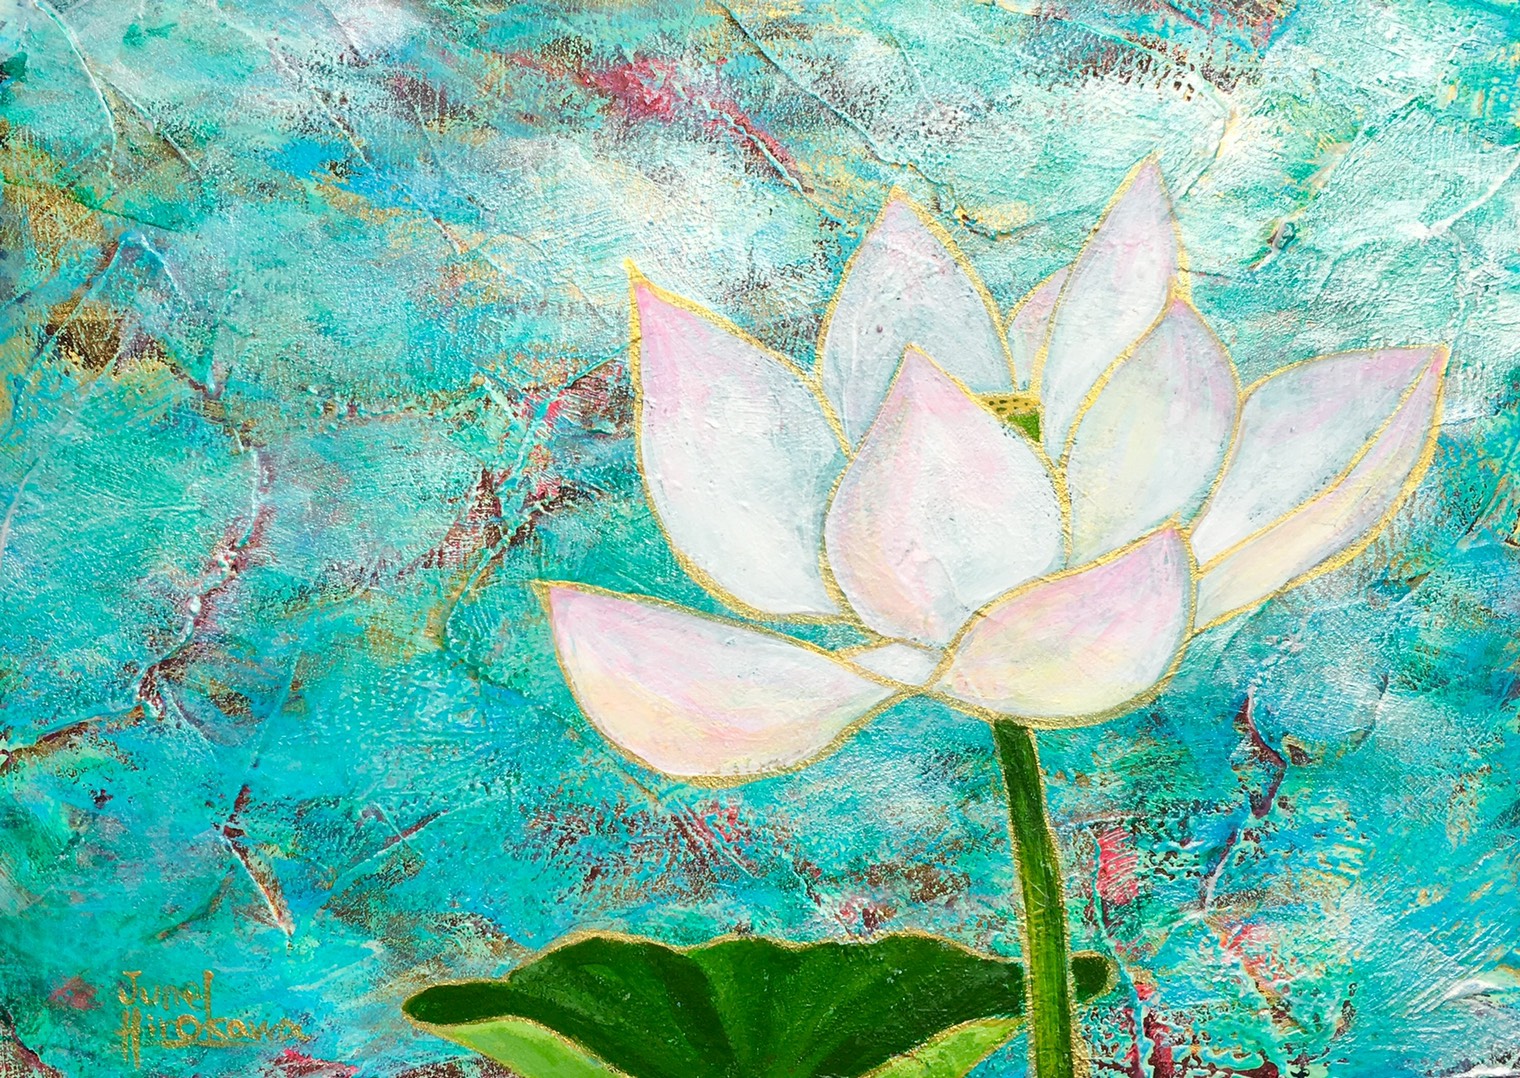 ”廣川じゅん”　さんの絵画作品 「Lotus」 です。